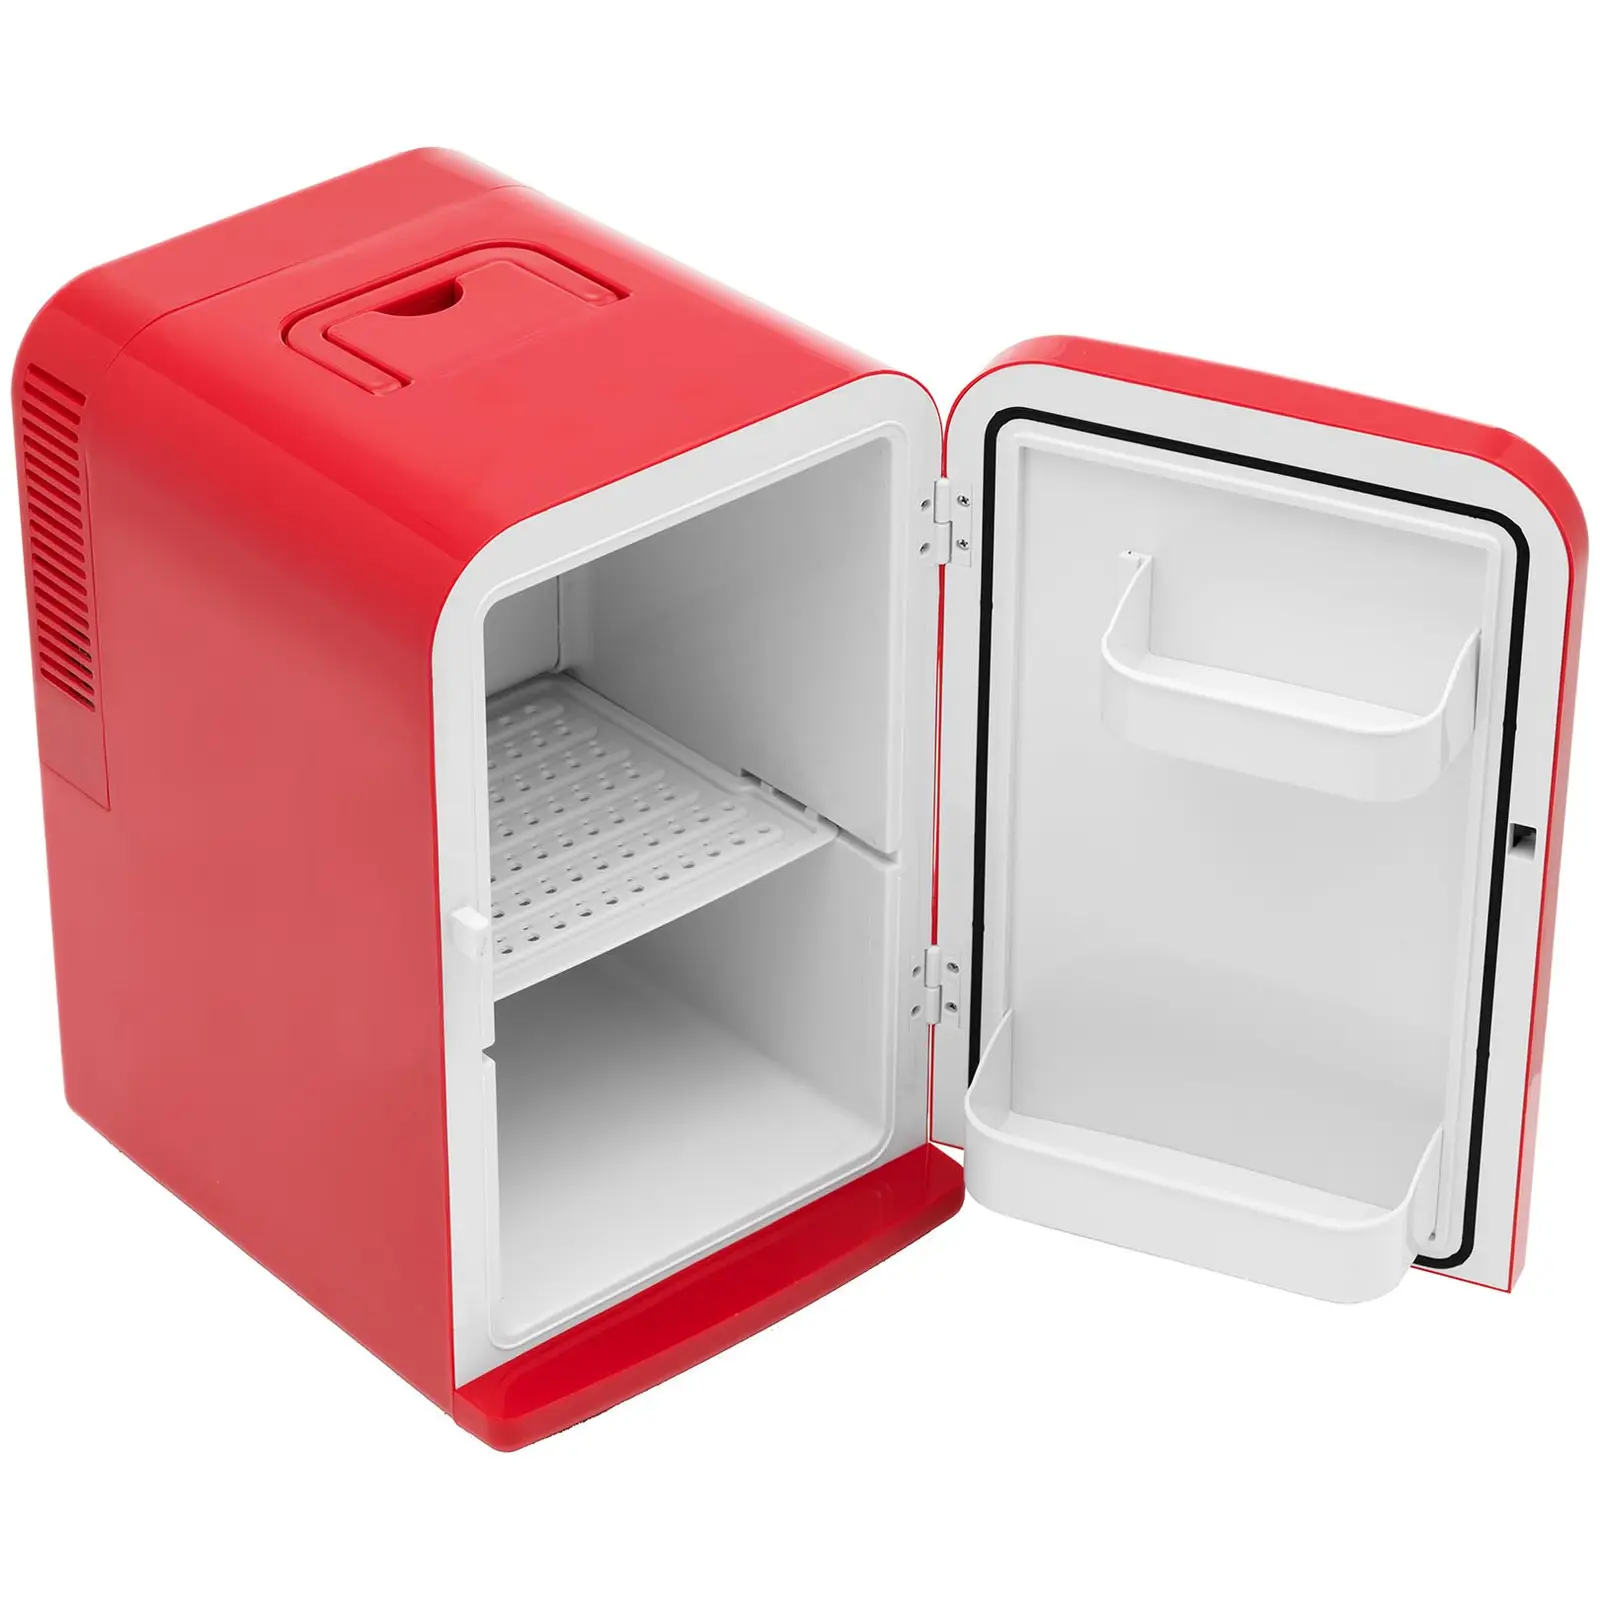 Mini-Kühlschrank 12 V / 230 V - 2-in-1-Gerät mit Warmhaltefunktion